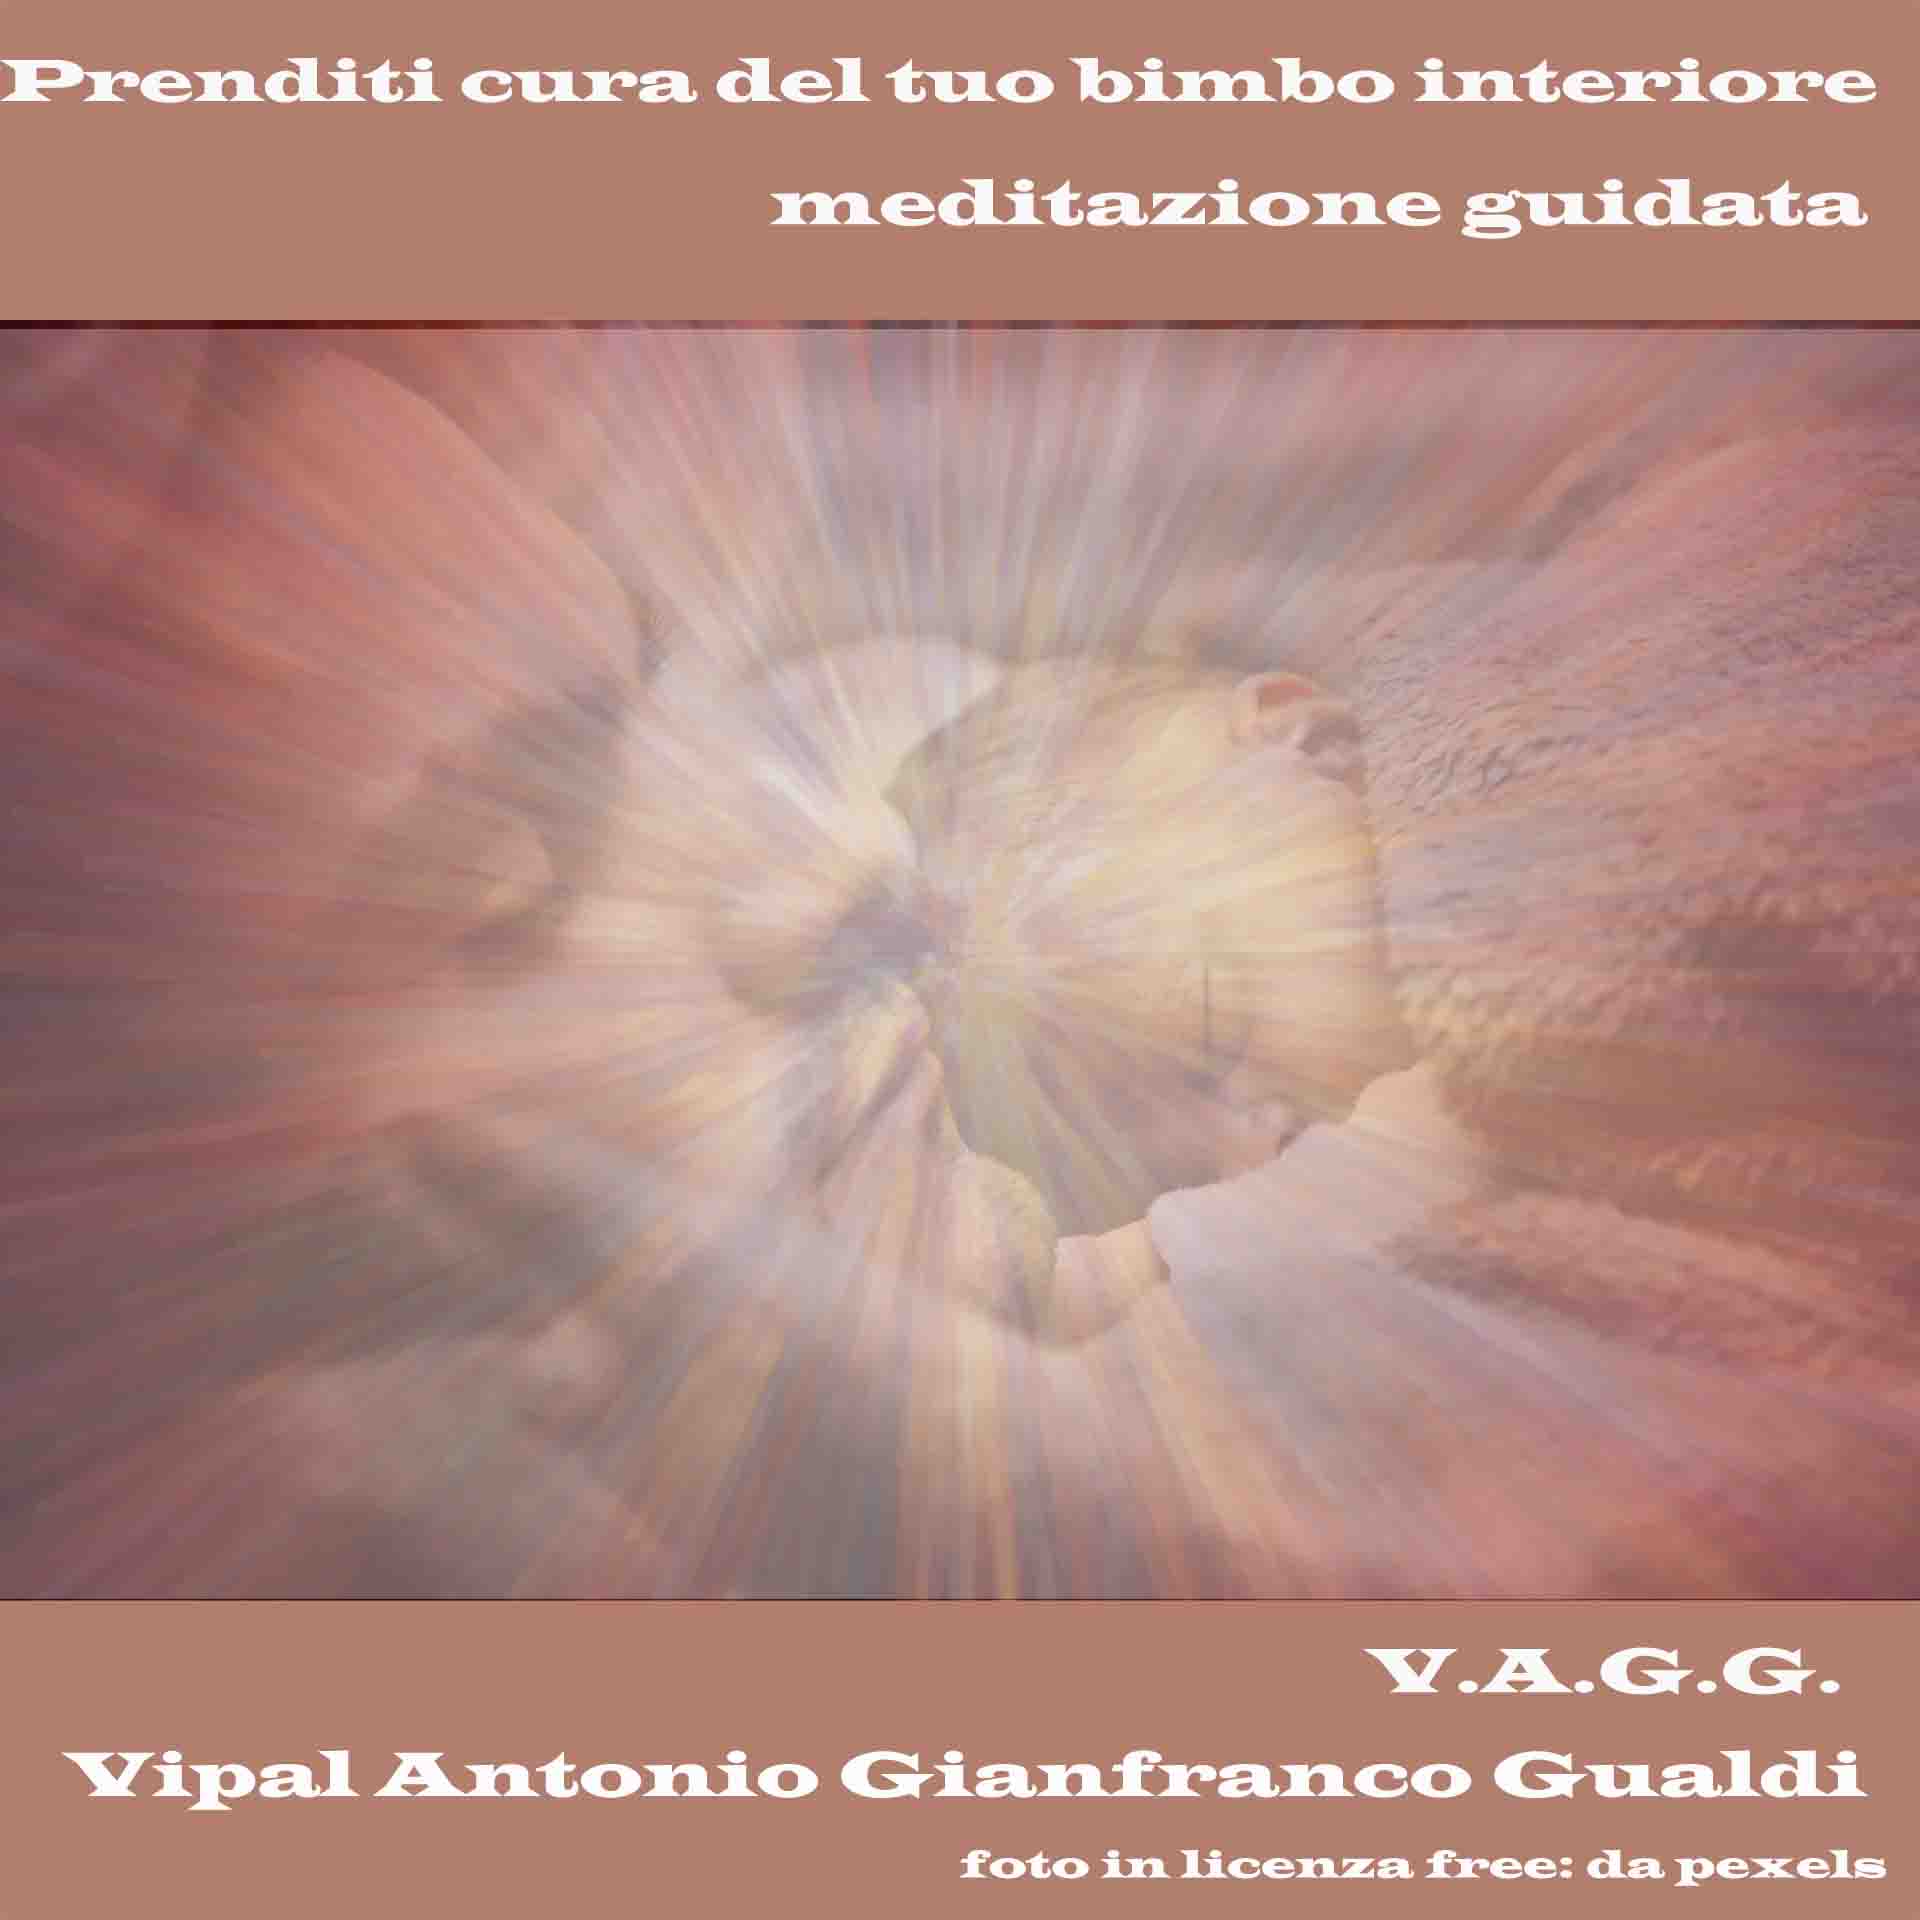 Prenditi cura del tuo bimbo interiore meditazione guidata Vipal Antonio Gianfranco Gualdi